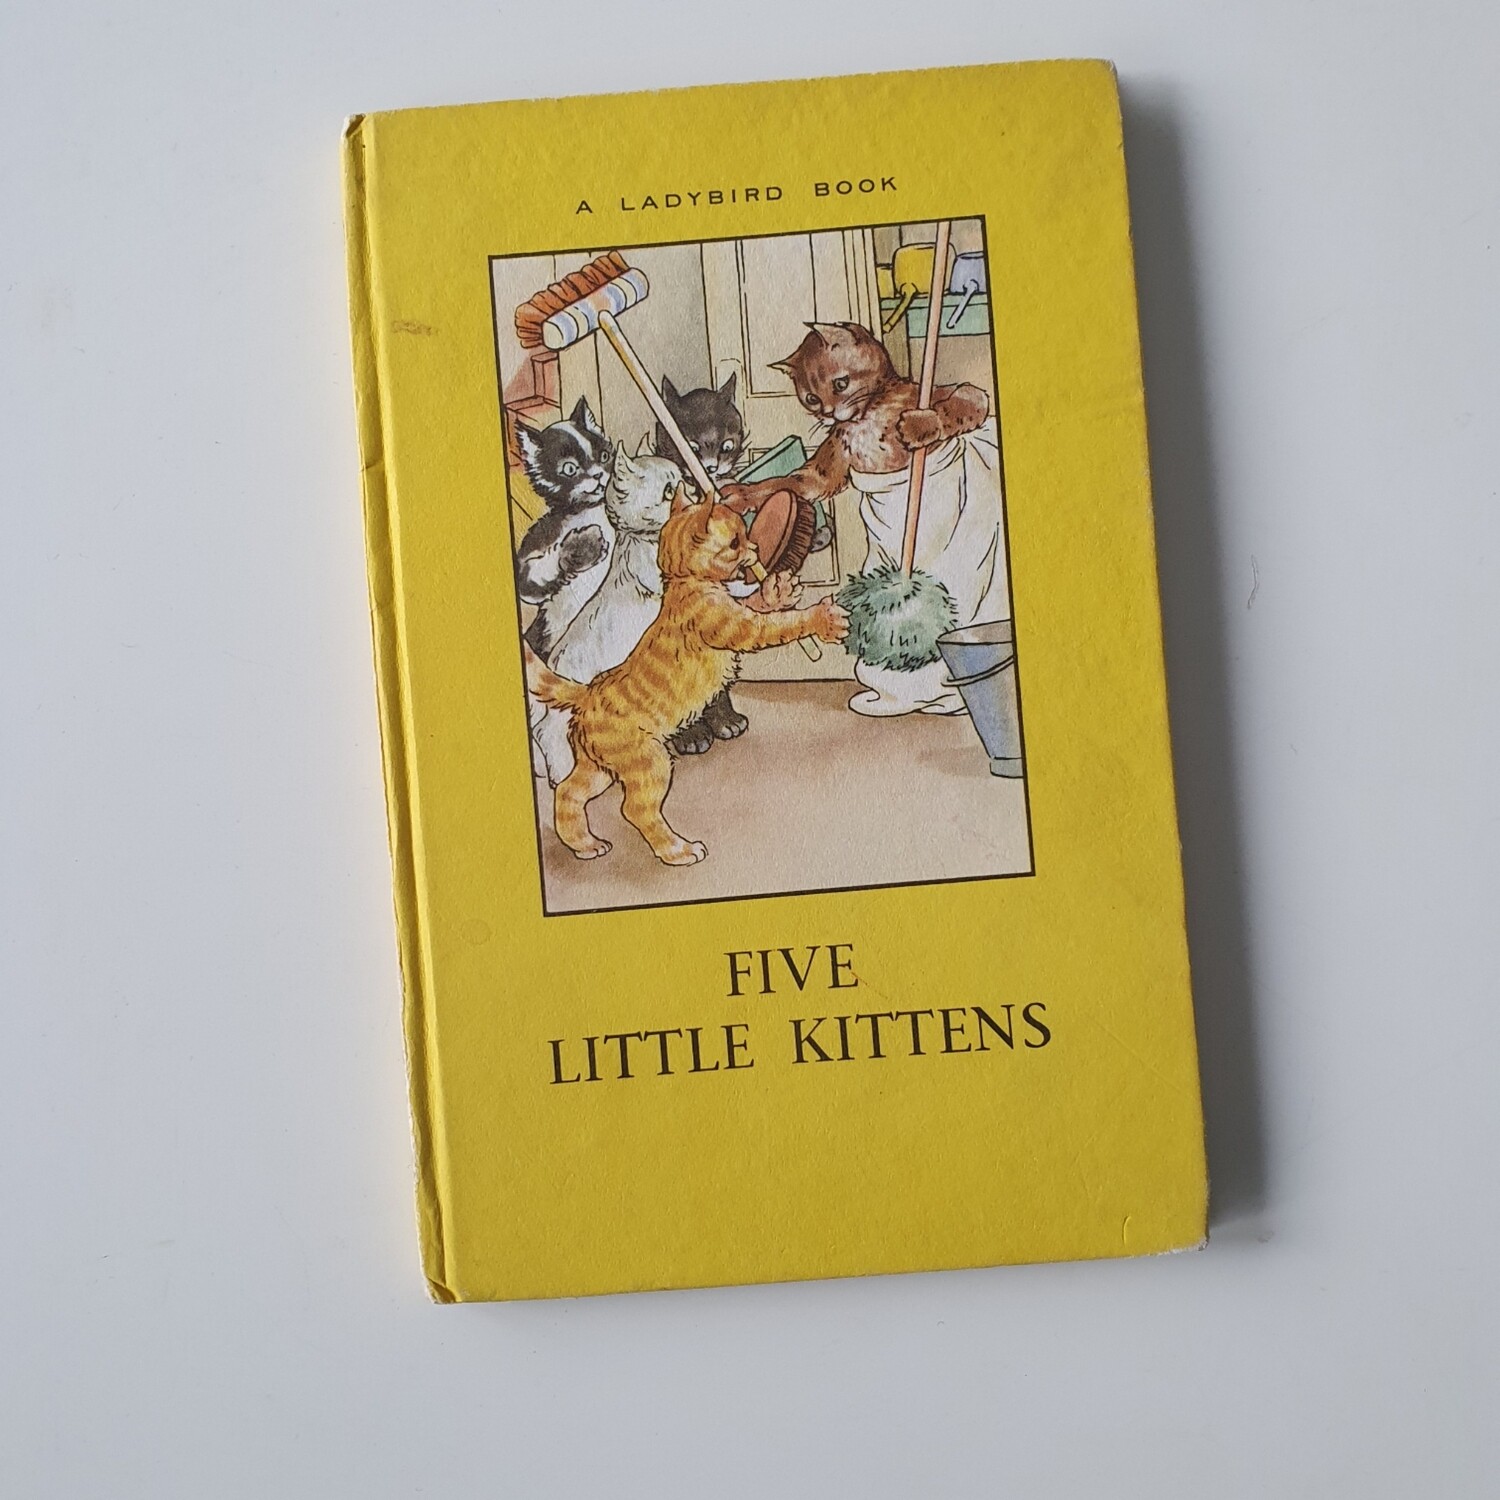 Five Little Kittens Notebook - Ladybird book, 